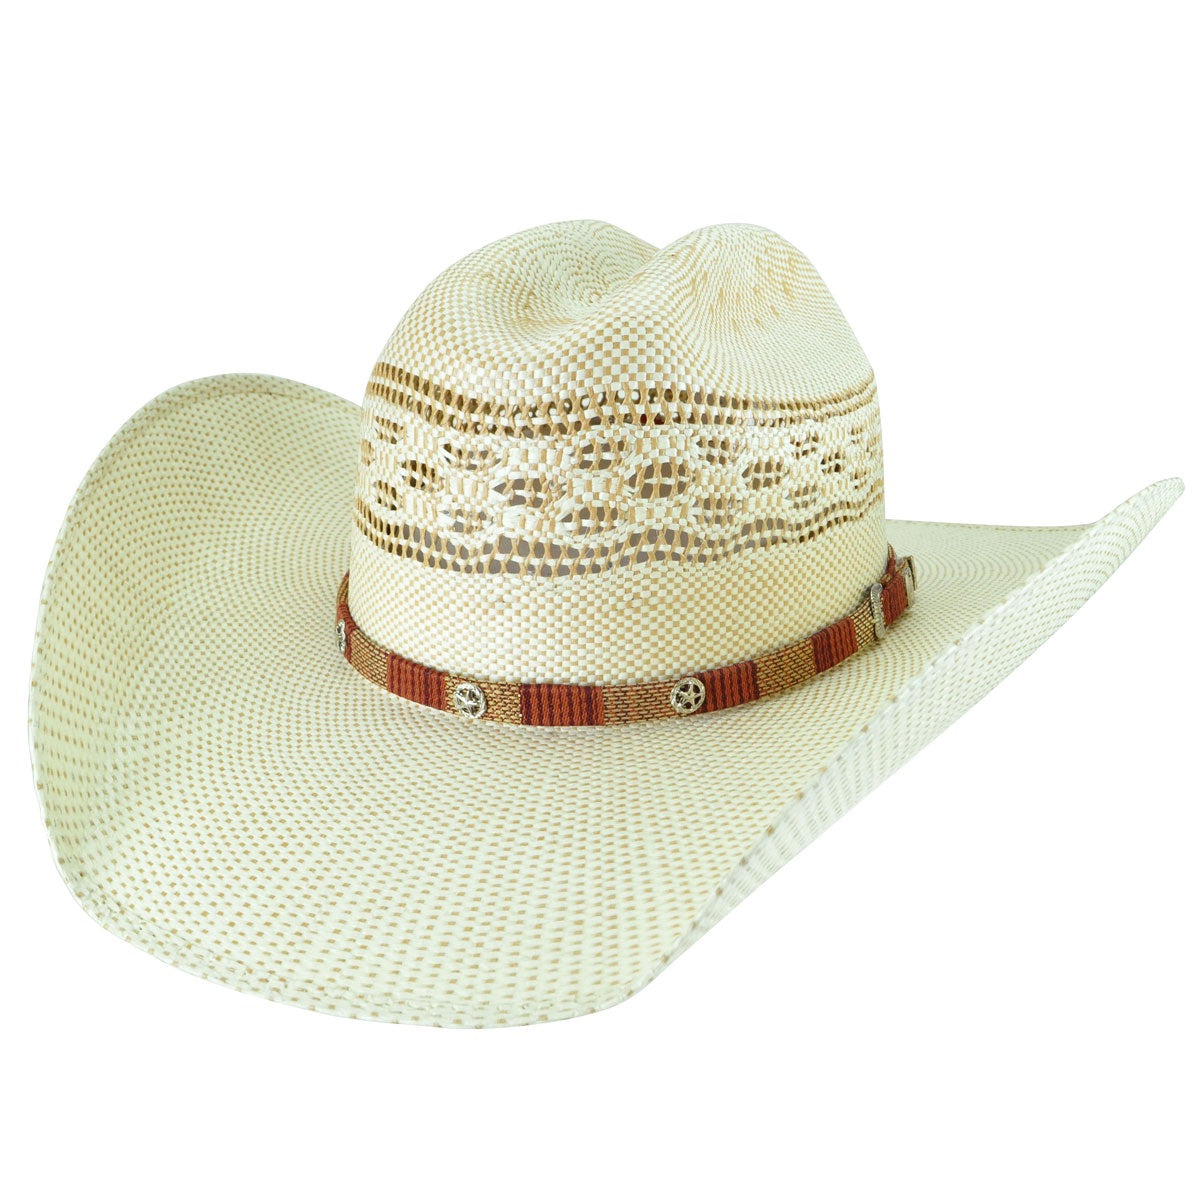 Spradley Straw Cowboy Hat